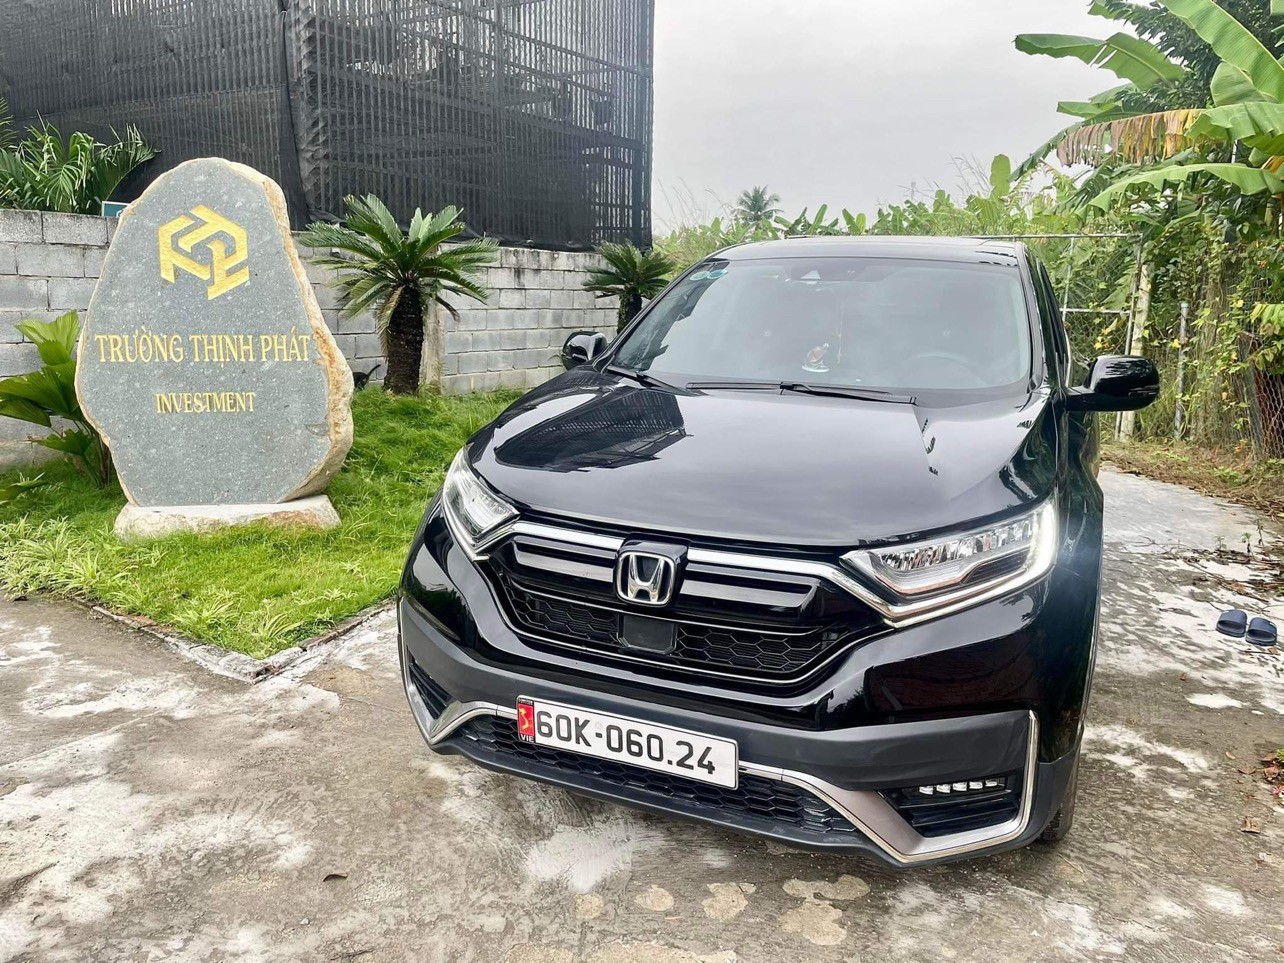 SigoVN - Cho thuê xe tự lái Đồng Nai - Honda CRV